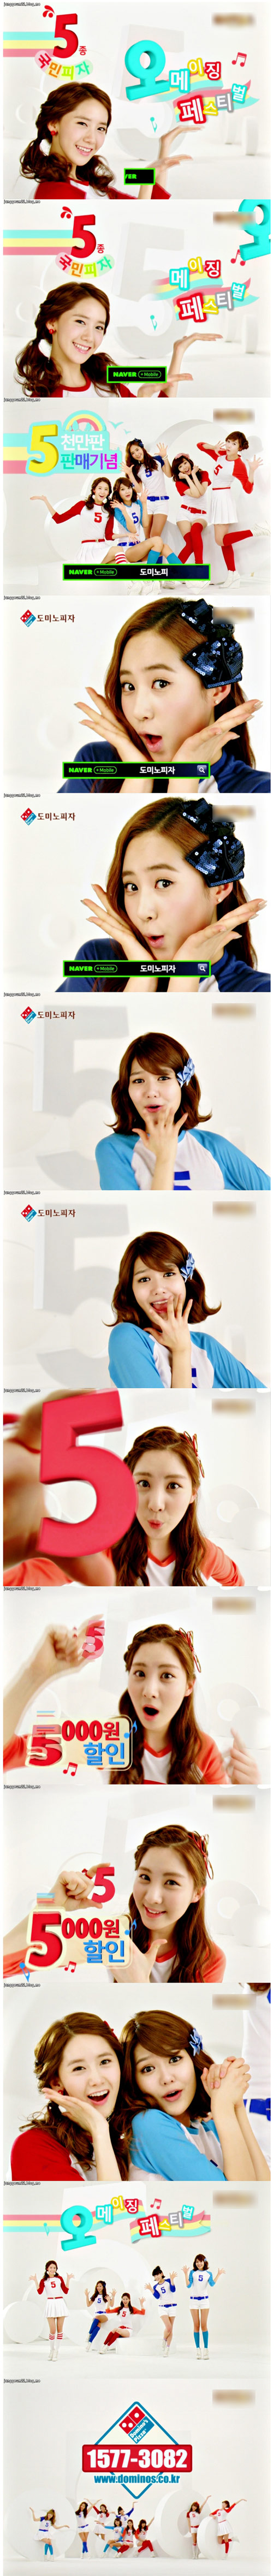 소녀시대 최근 피자 광고속 리얼한 표정 연기 눈길